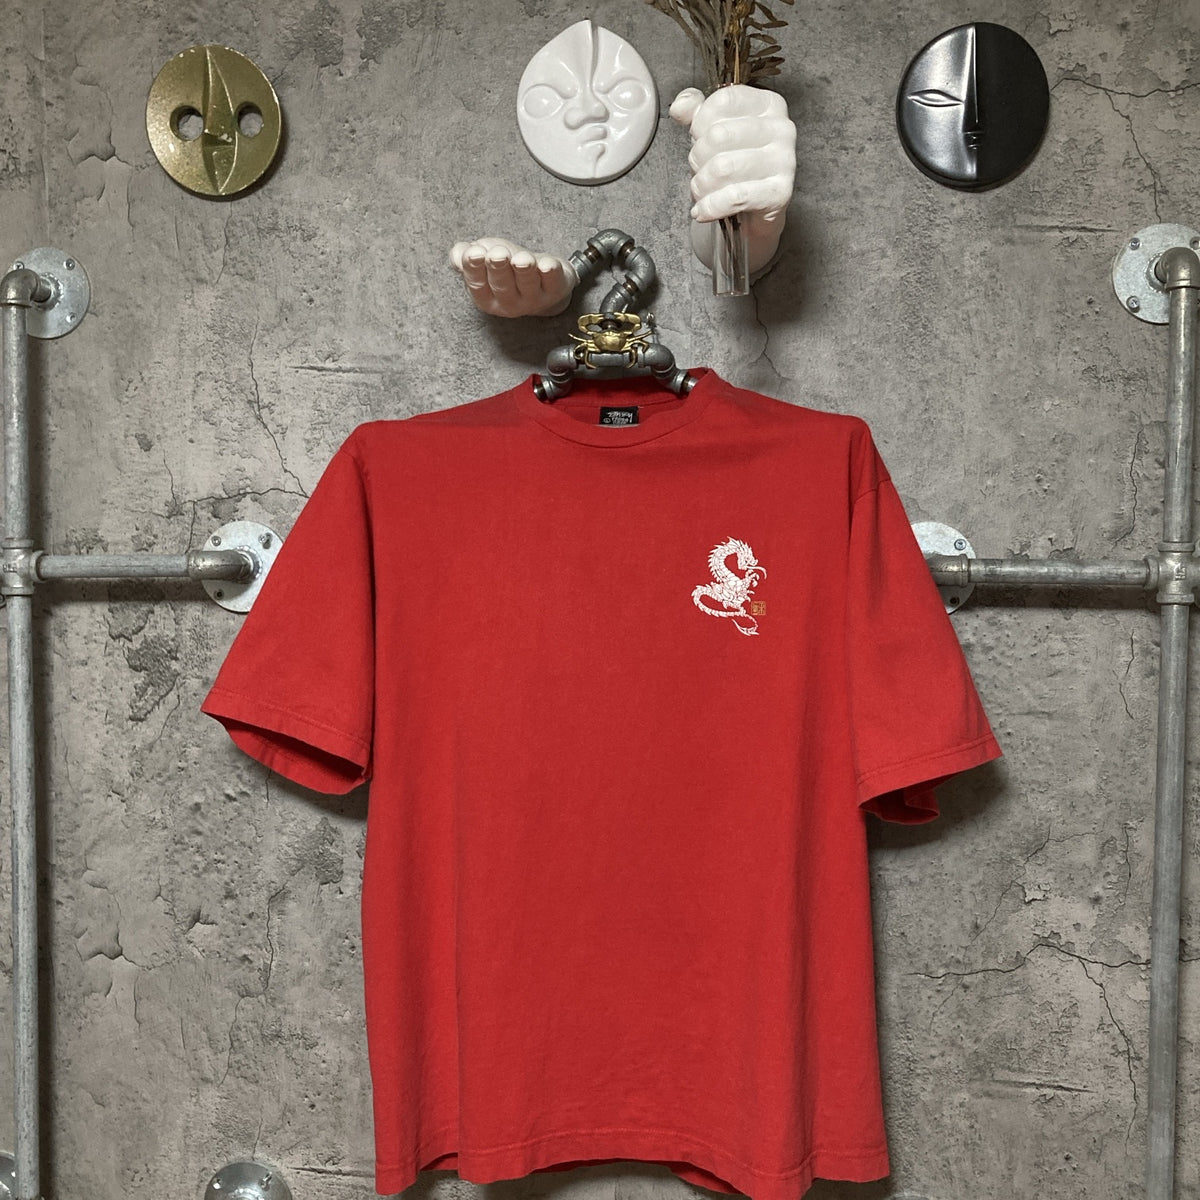 nolithのメンズ90’s stussy 龍 人気の赤 USAタグ Tシャツ